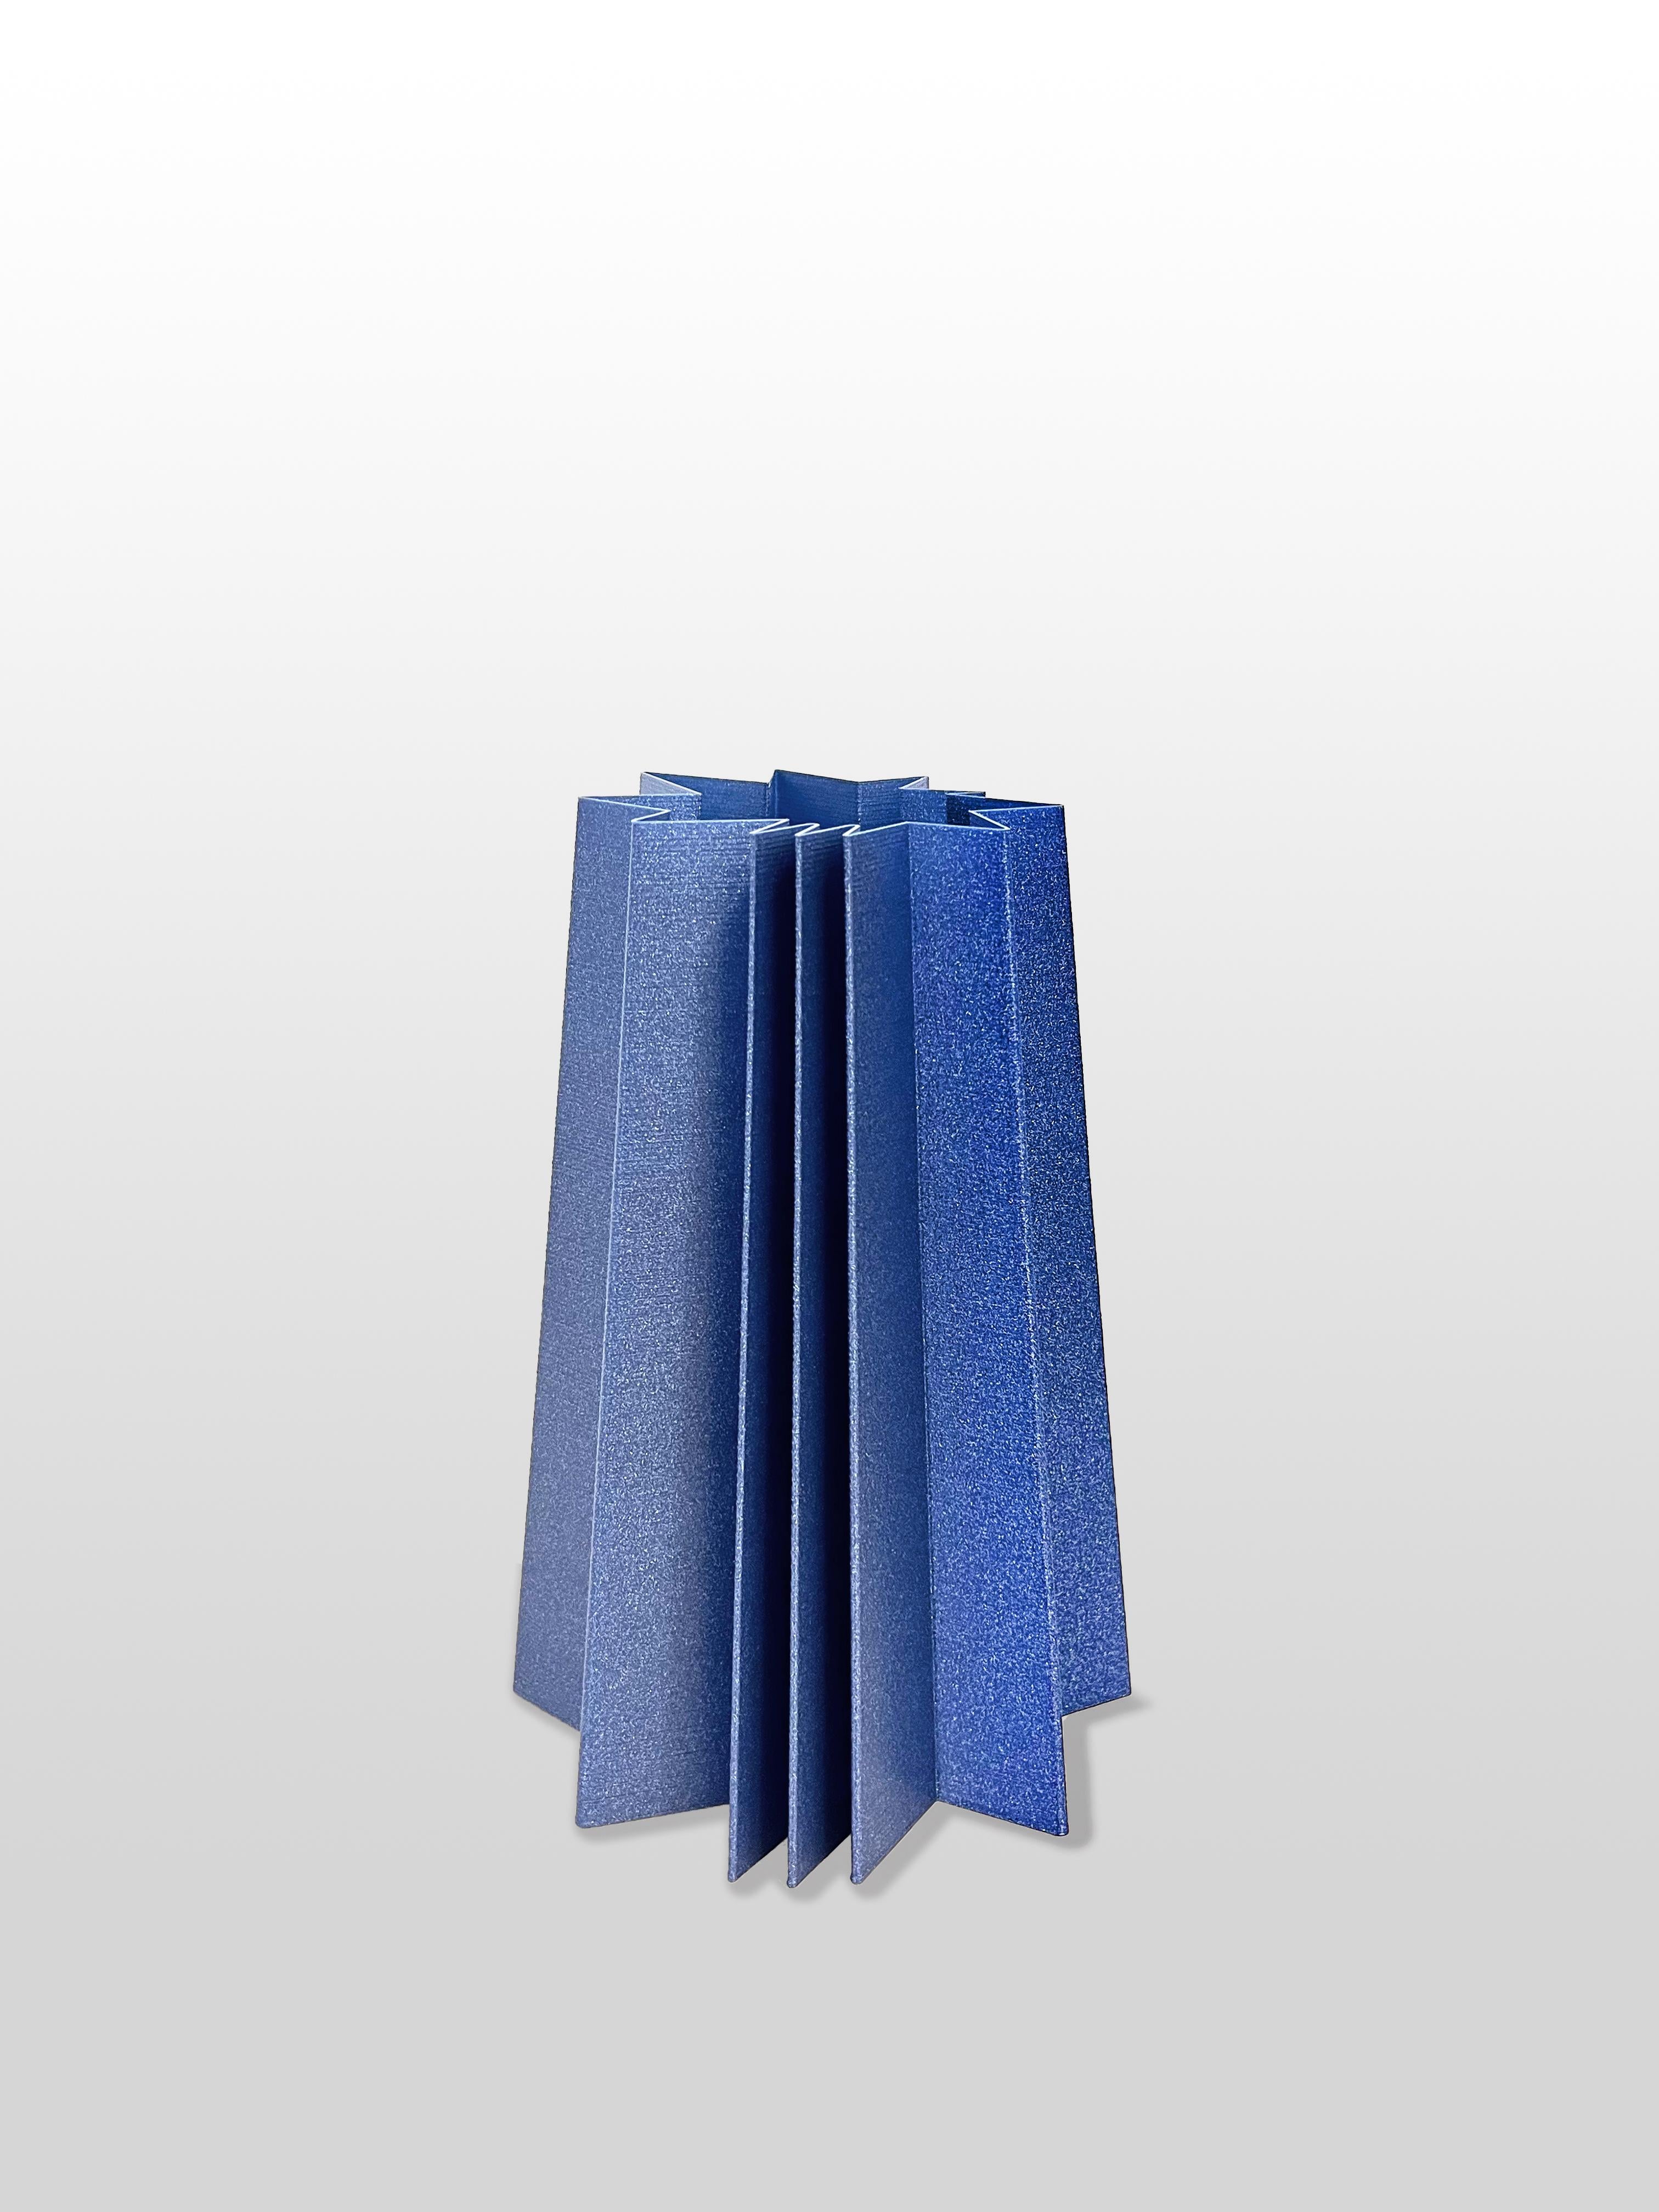 Italian Contemporary 3D Printed Stella Vase Medium For Sale